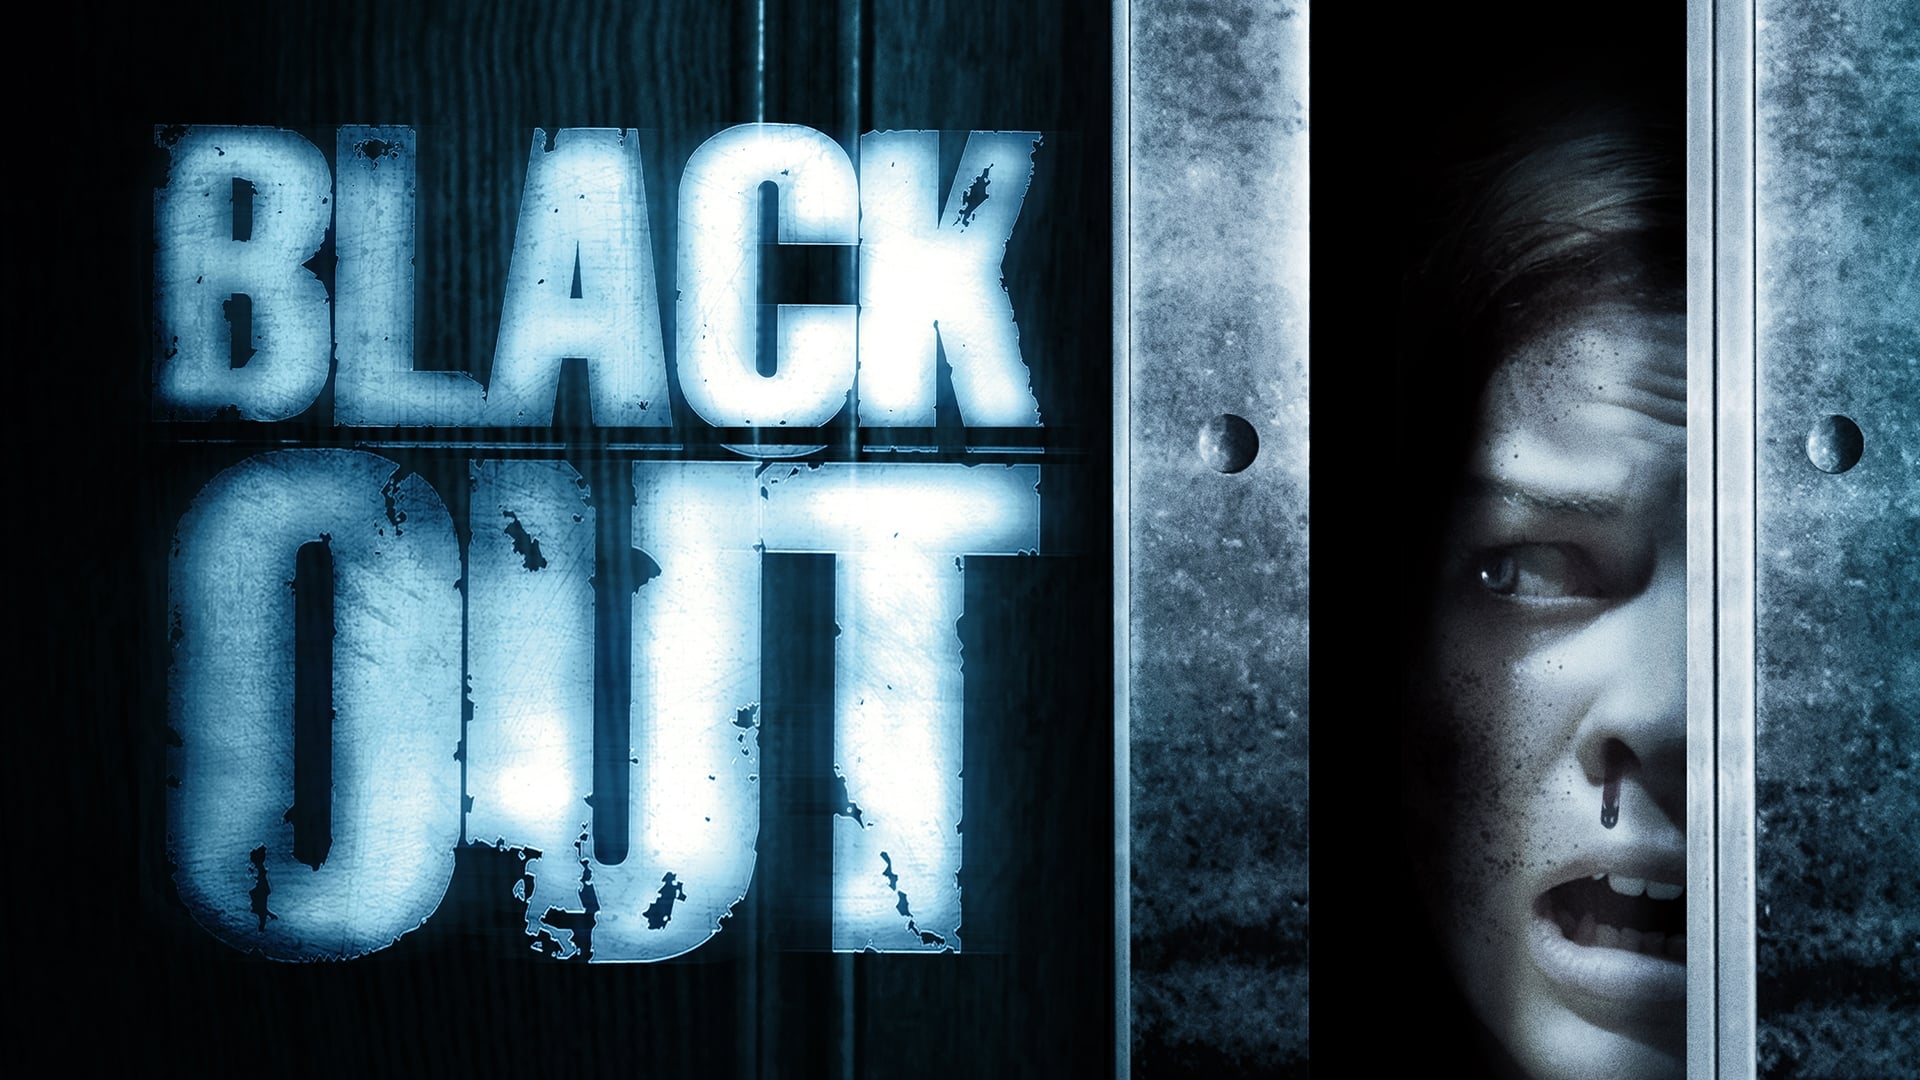 Blackout (2008)